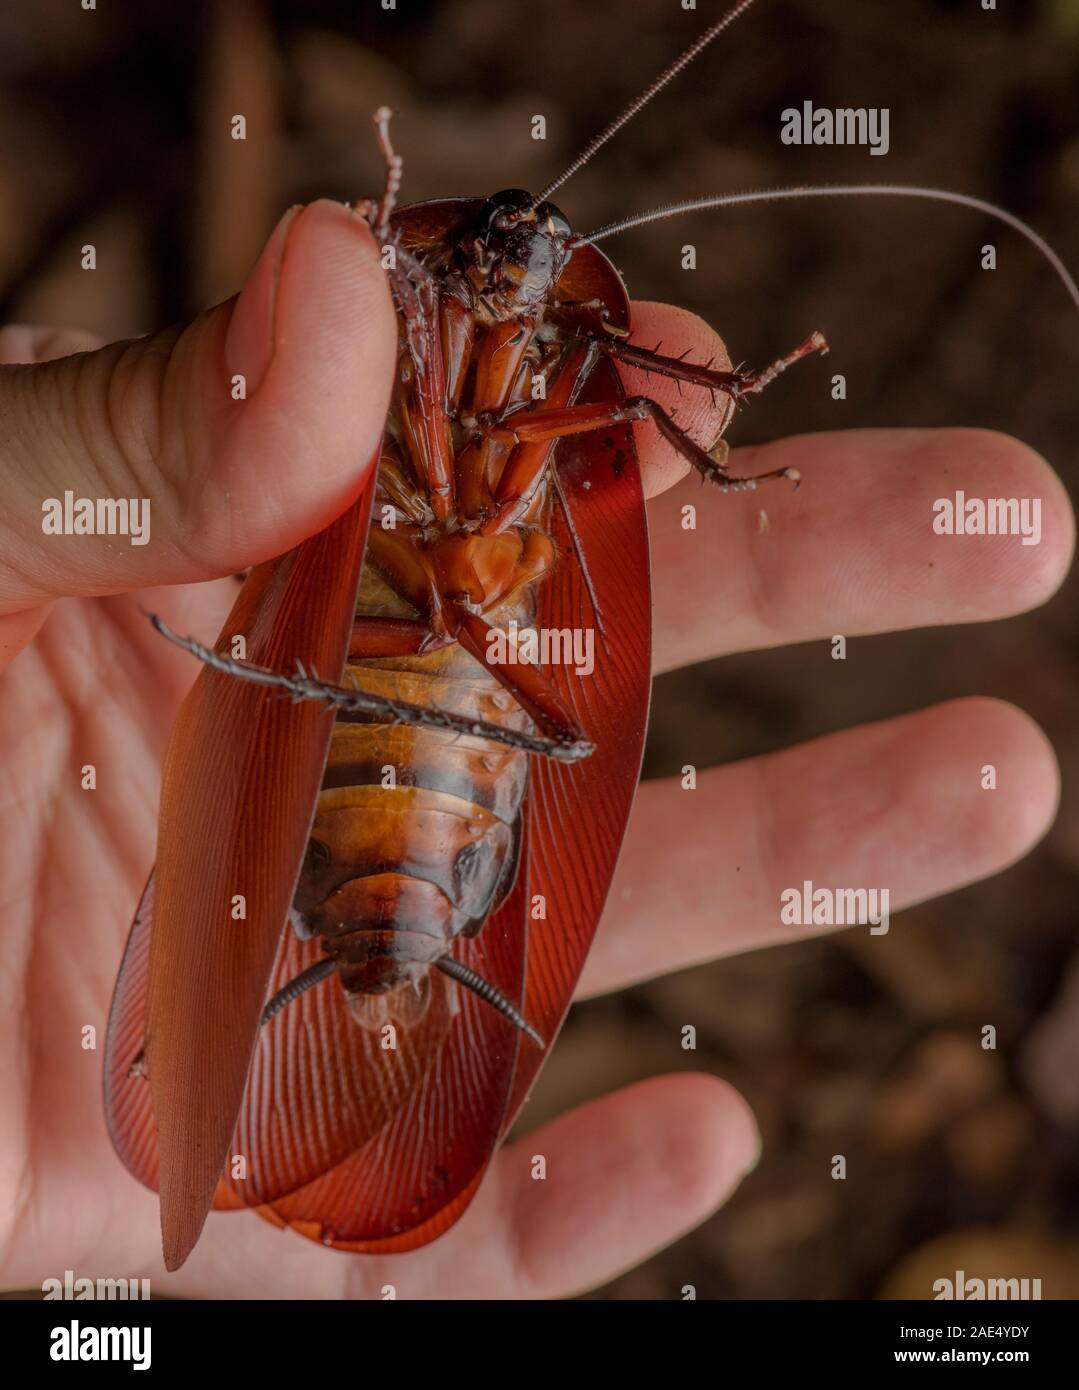 Specie di scarafaggio immagini e fotografie stock ad alta risoluzione -  Alamy